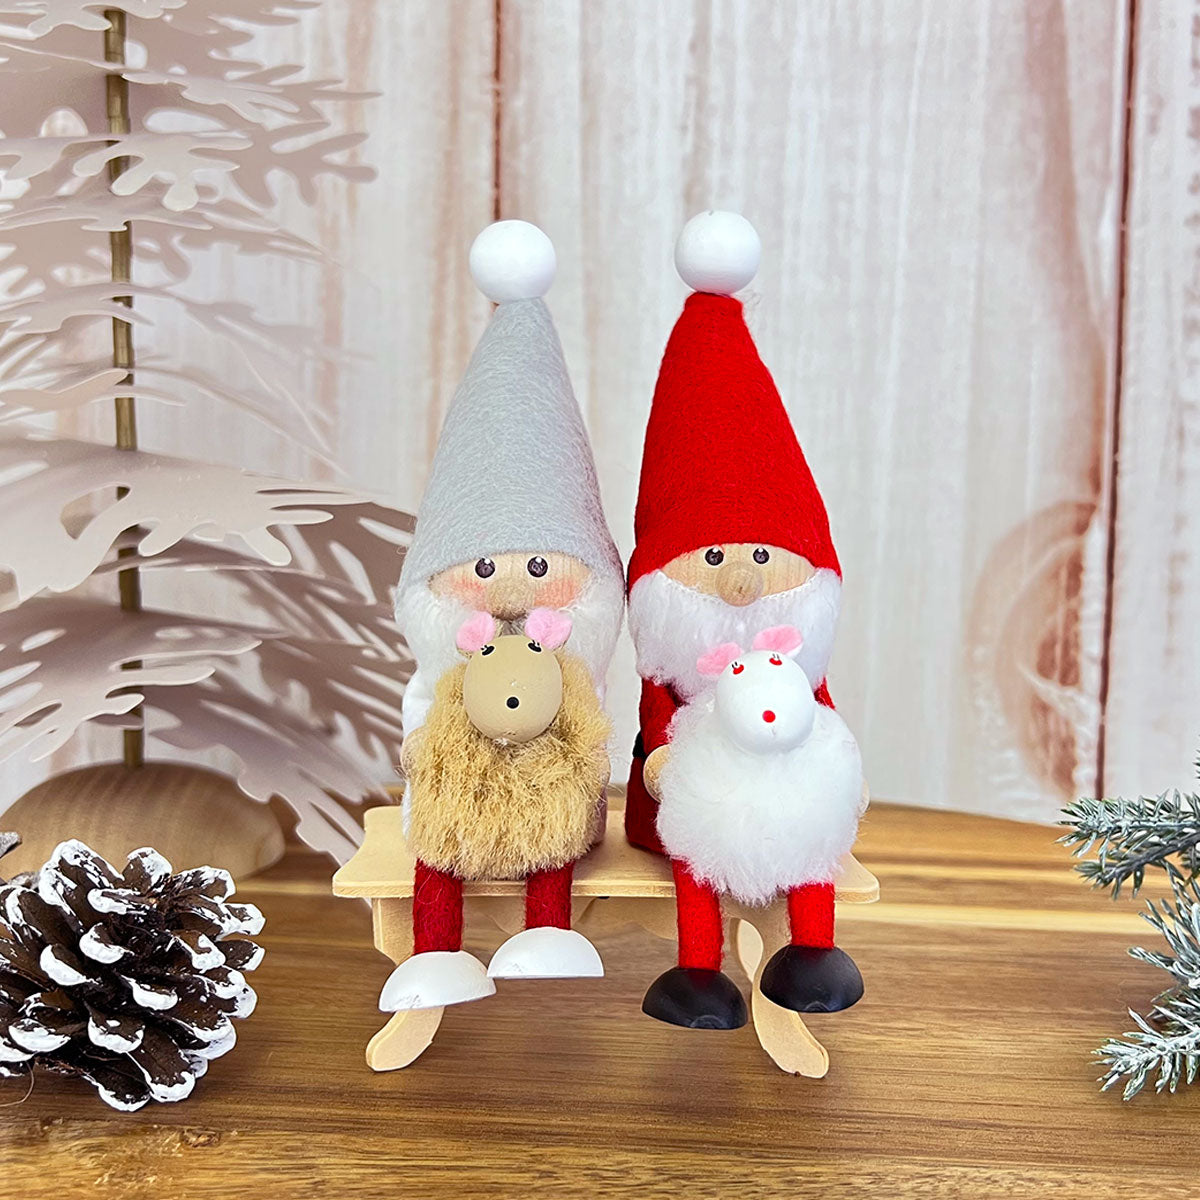 NORDIKA nisse ノルディカ ニッセ クリスマス 木製人形 ( ウサギを抱えたサンタ )